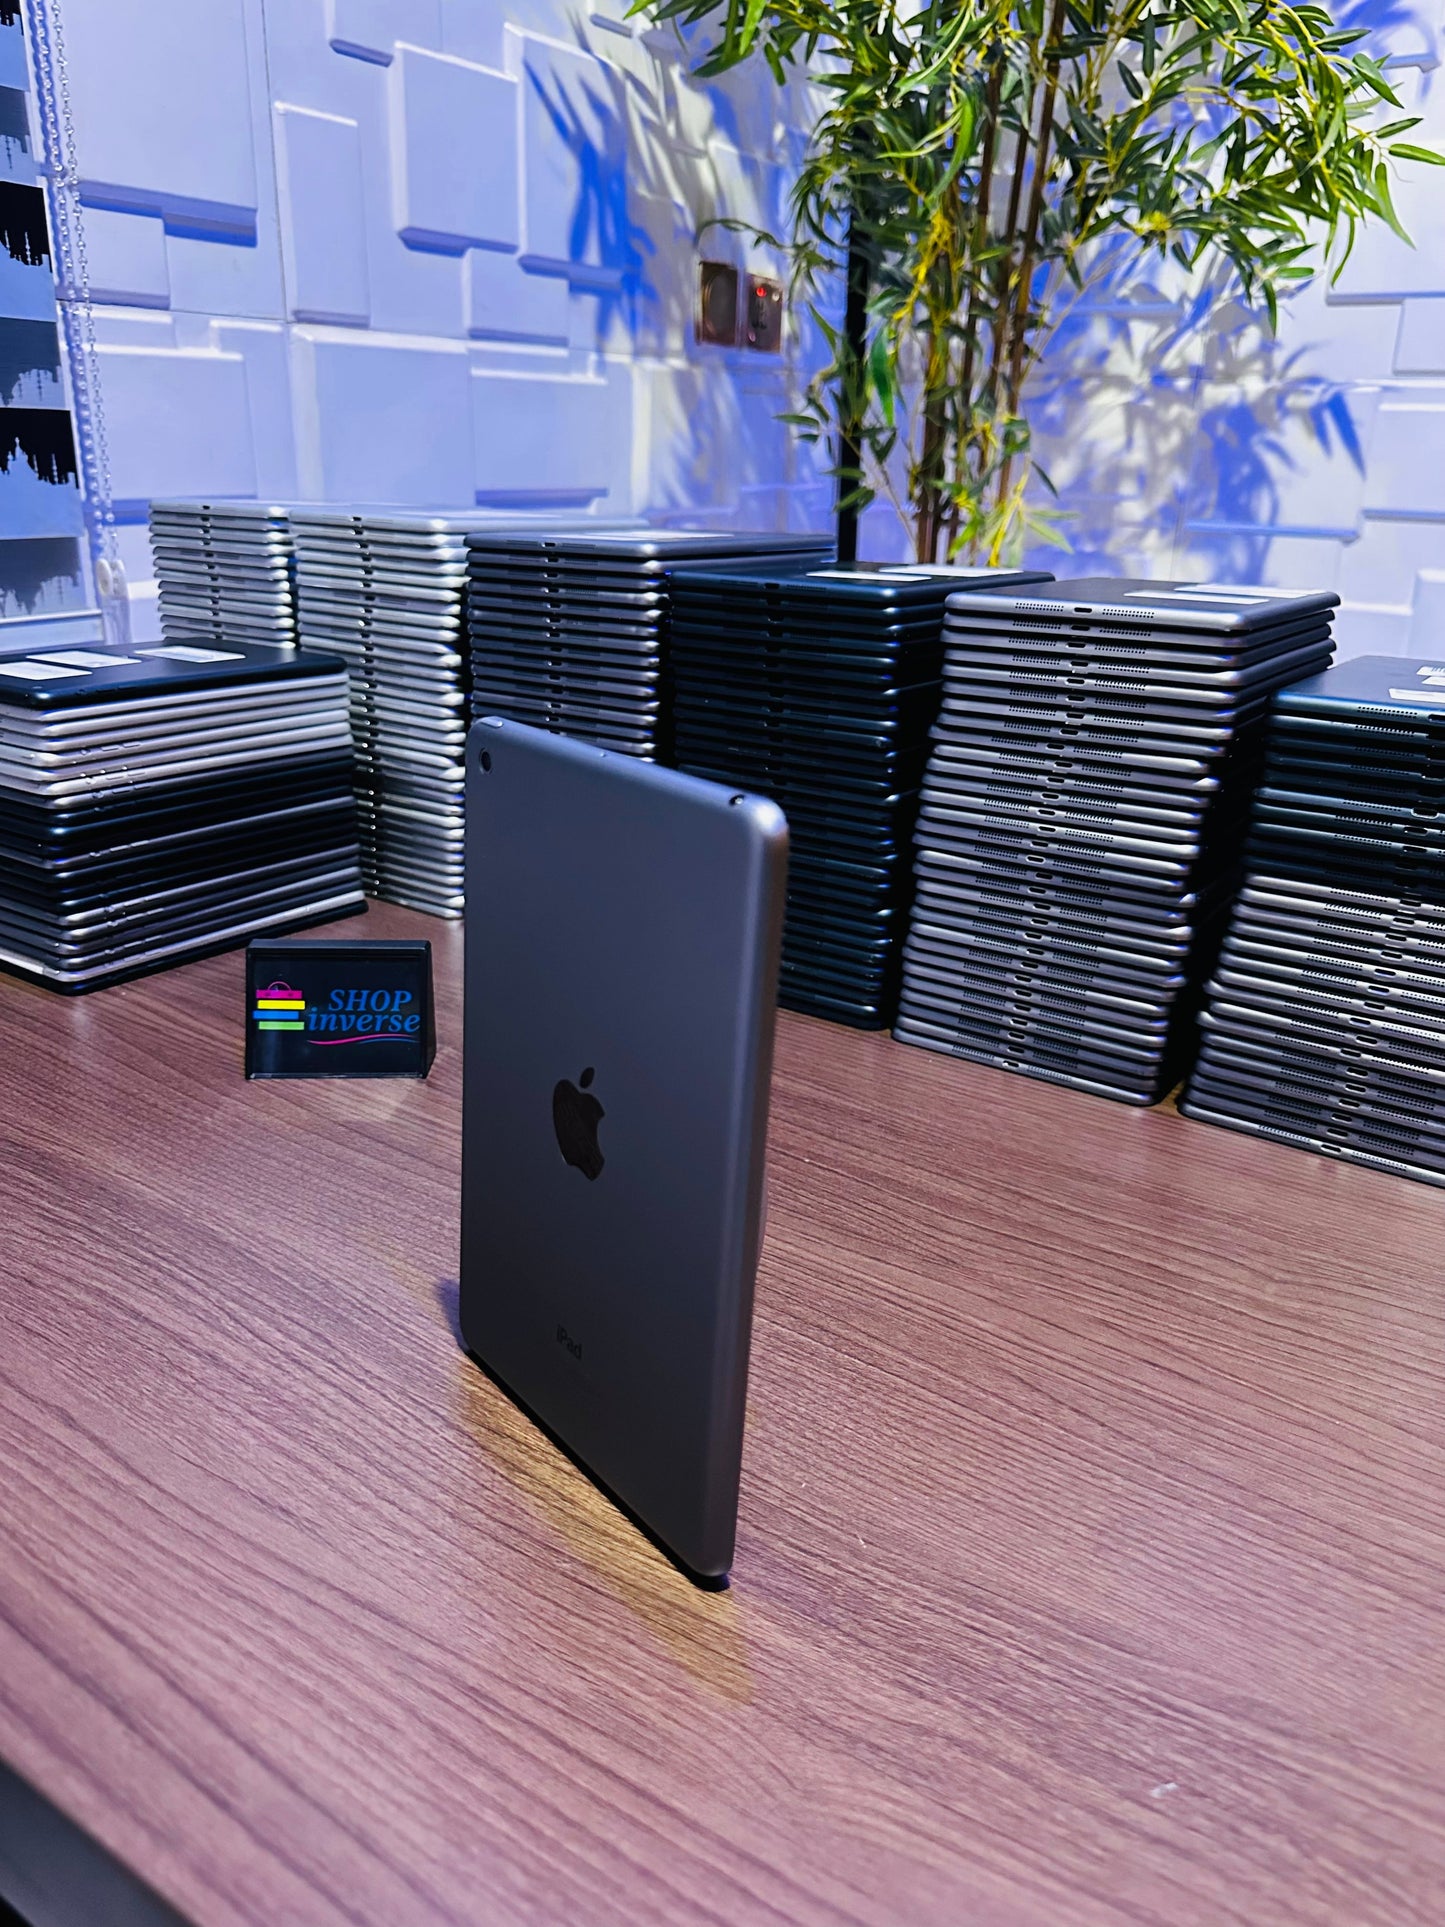 Apple iPad Mini 2 - 16GB - WiFi + SIM - Space Gray